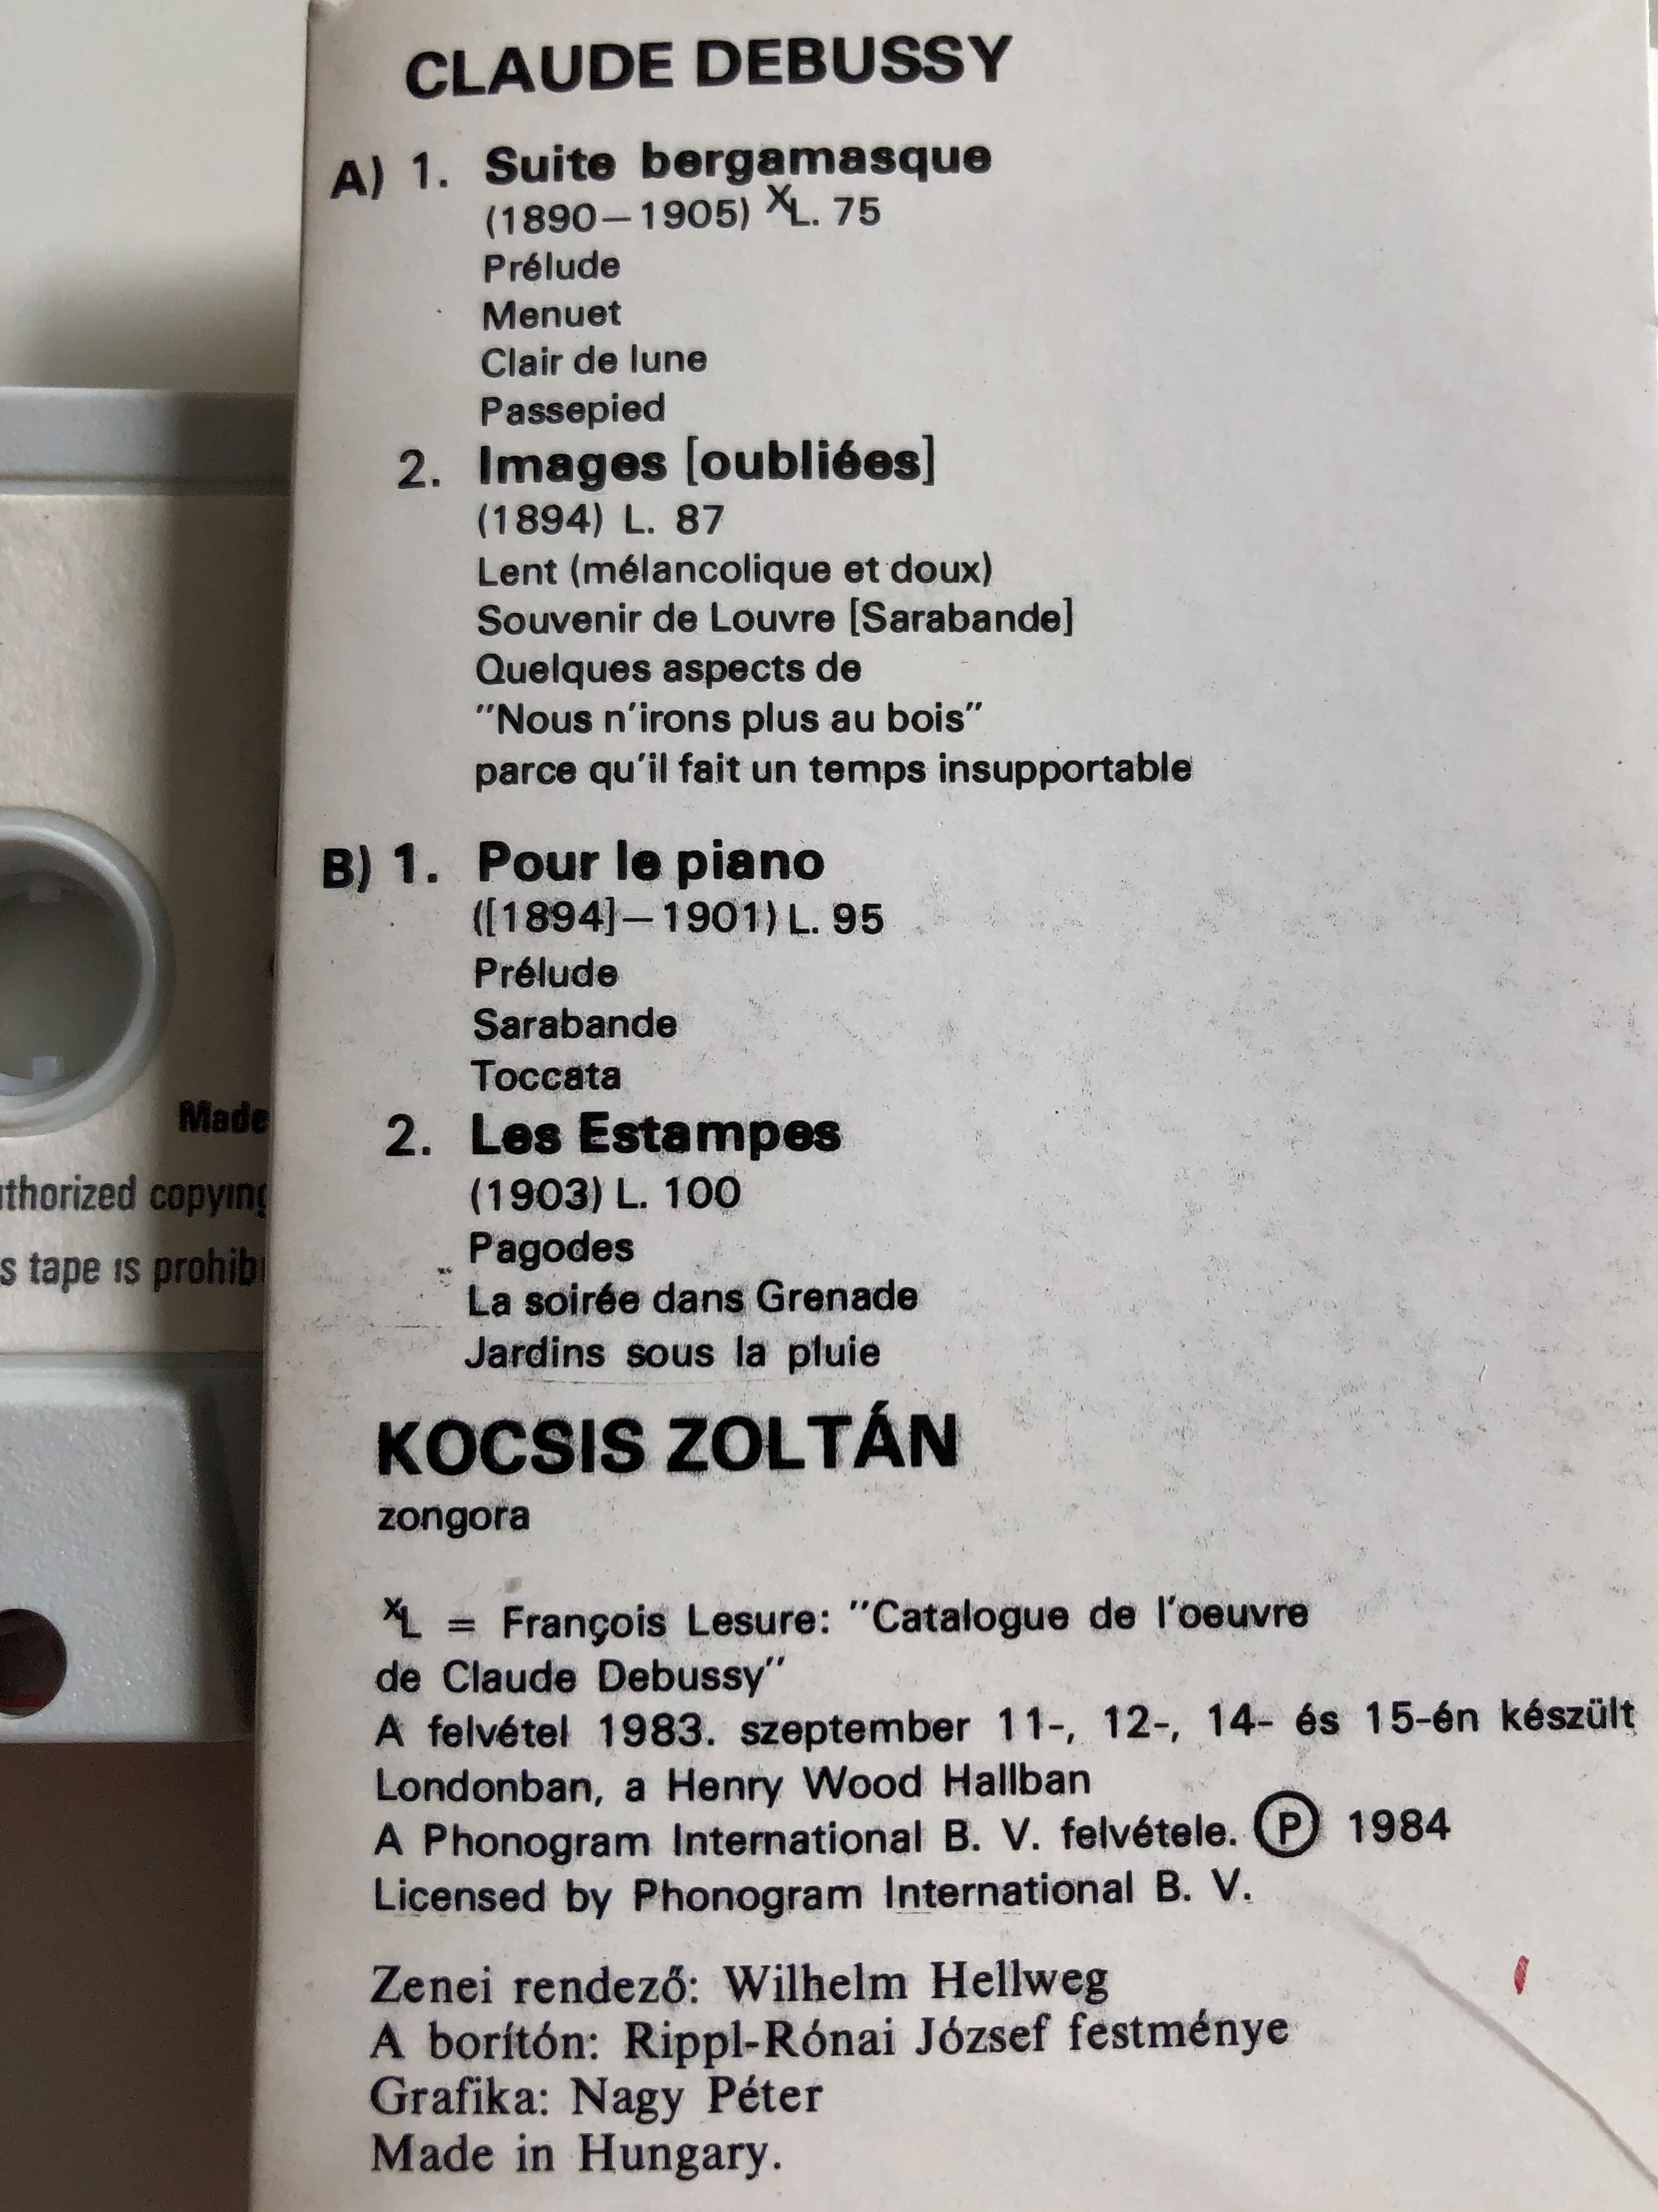 debussy-kocsis-suite-bergamasque-images-oubli-es-pour-le-piano-les-estampes-hungaroton-cassette-stereo-mk-12586-a-3-.jpg